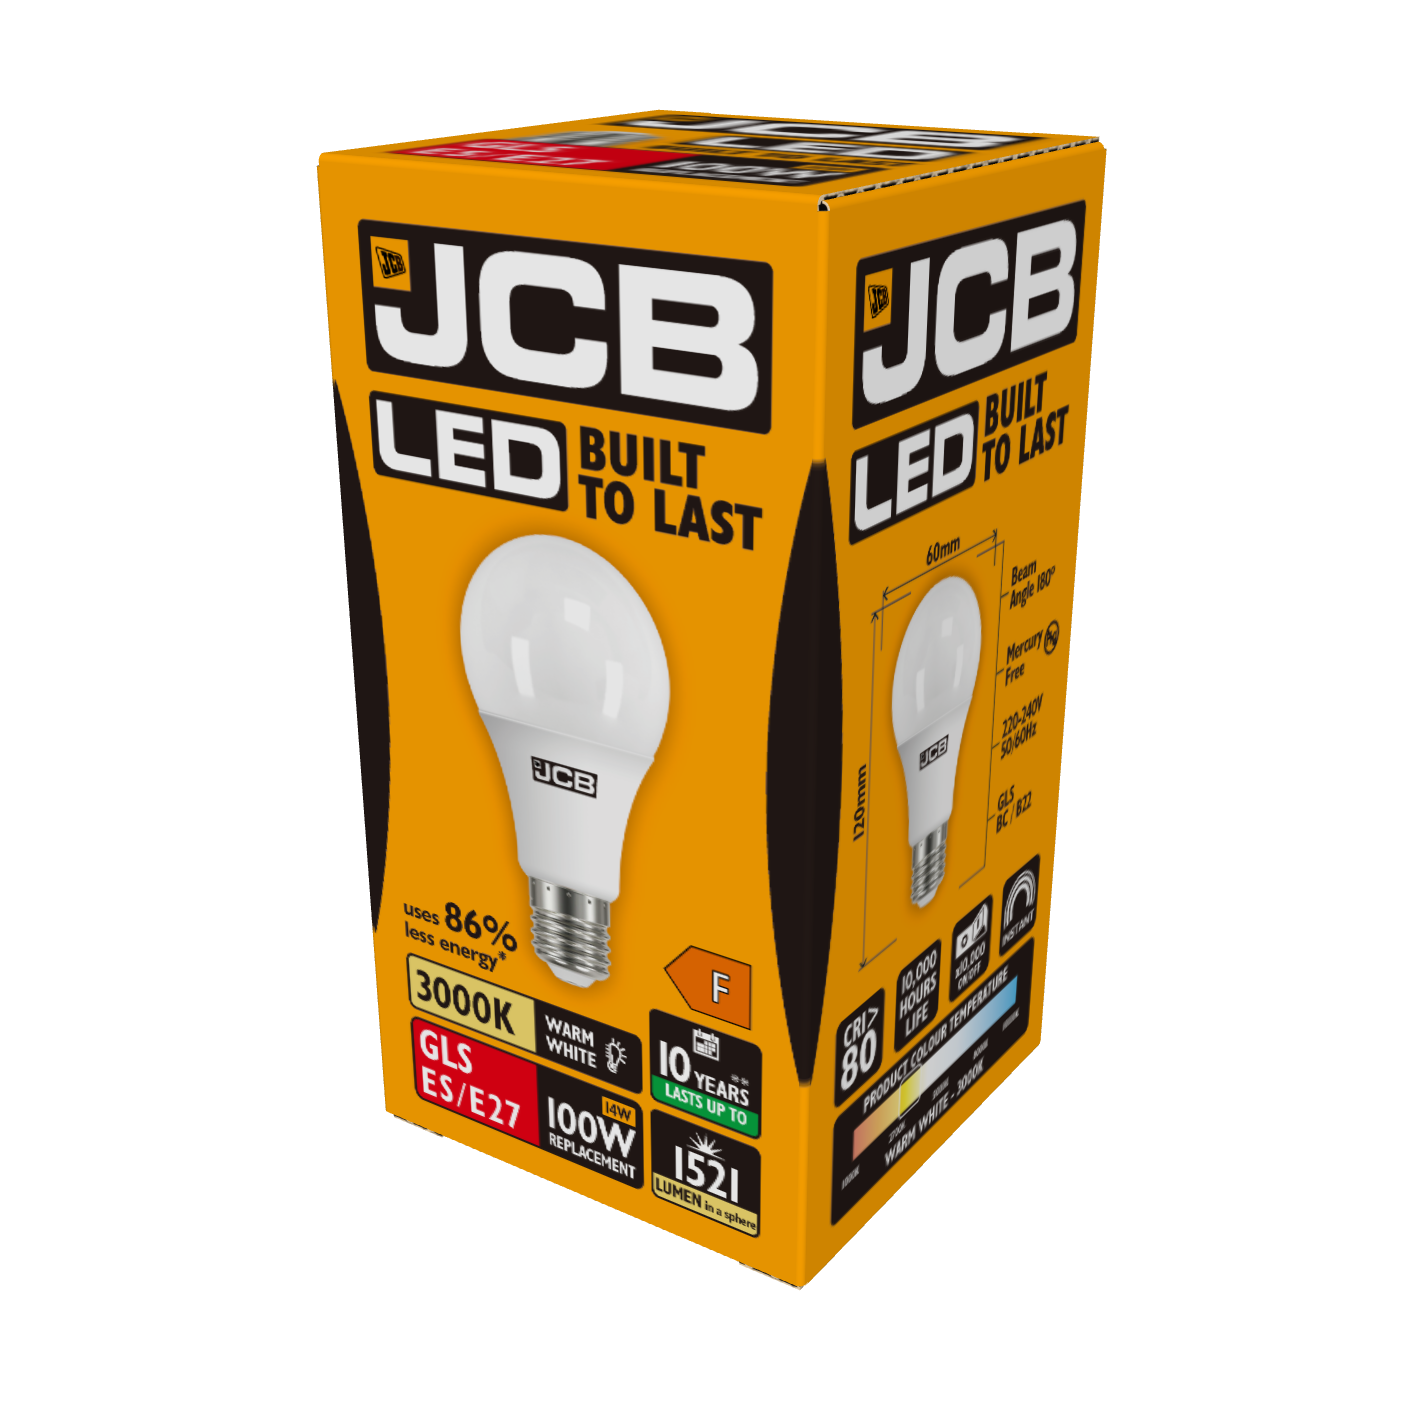 JCB LED GLS E27 (ES) 1.521 lm 14 W 3.000 K (Warmweiß), Packung mit 1 Stück